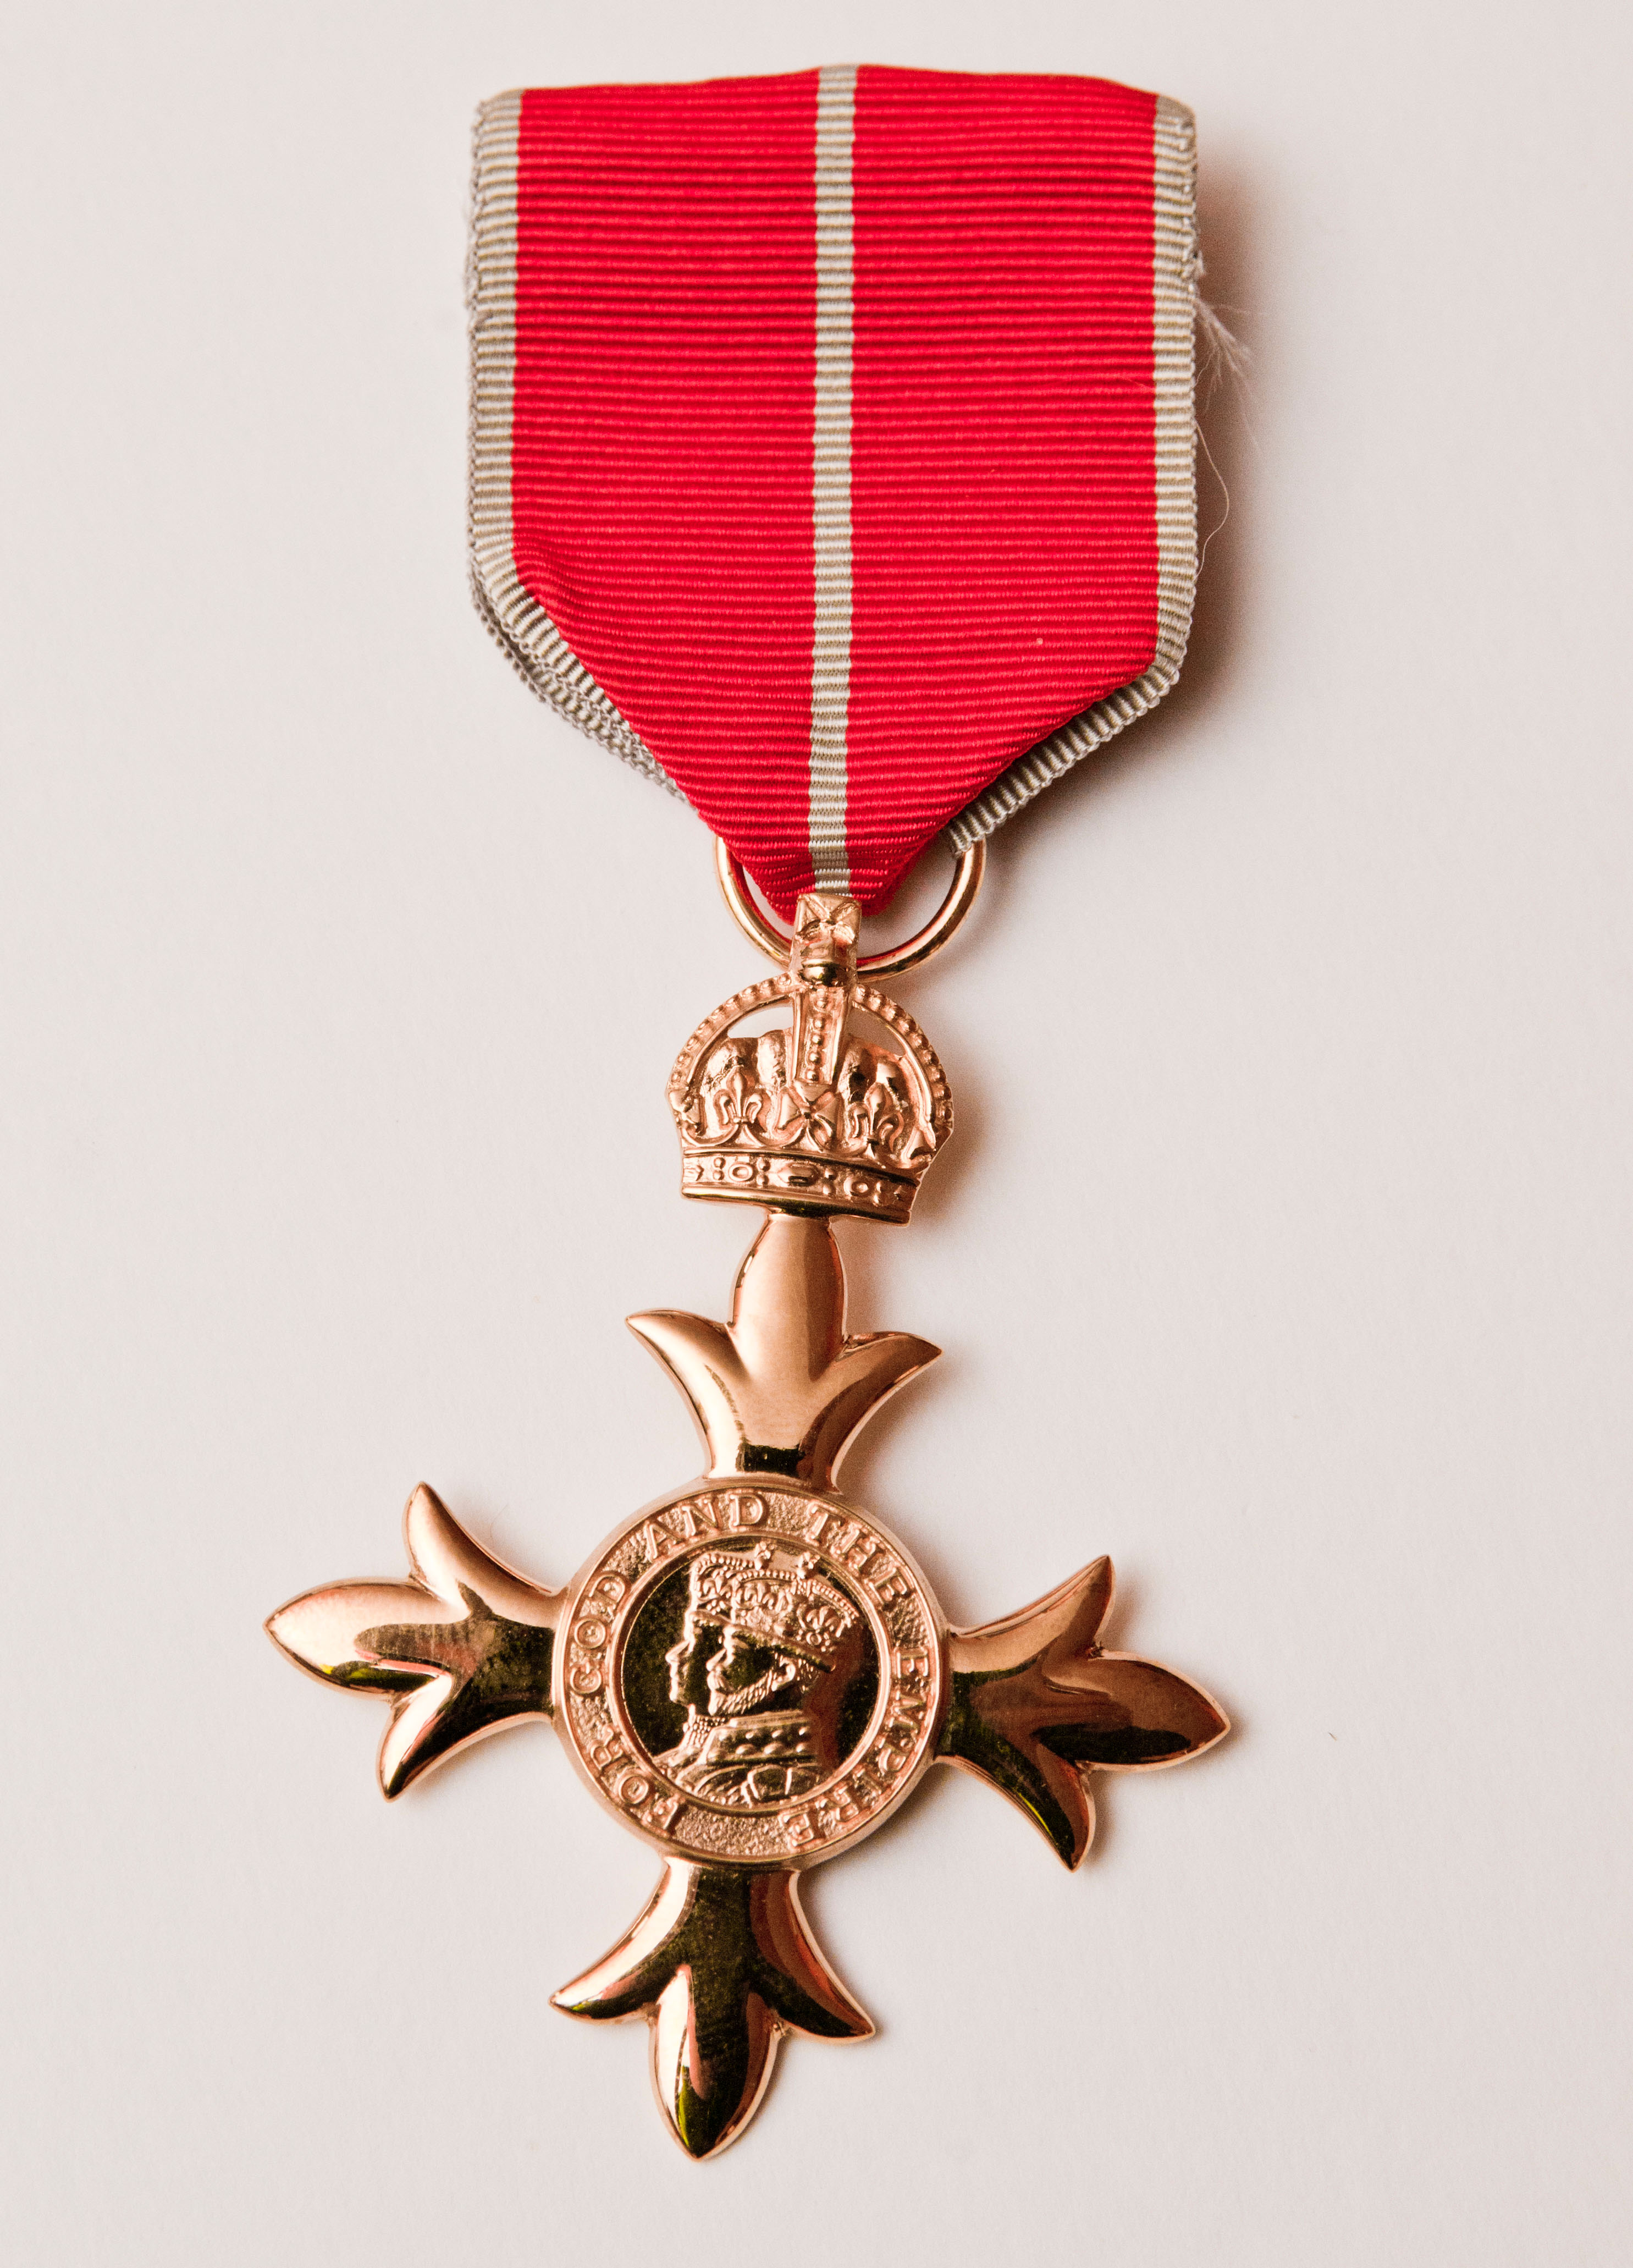 L'Ordre le plus excellent de l'Empire britannique est un ordre de chevalerie créé en 1917 par le roi George Cinquième.